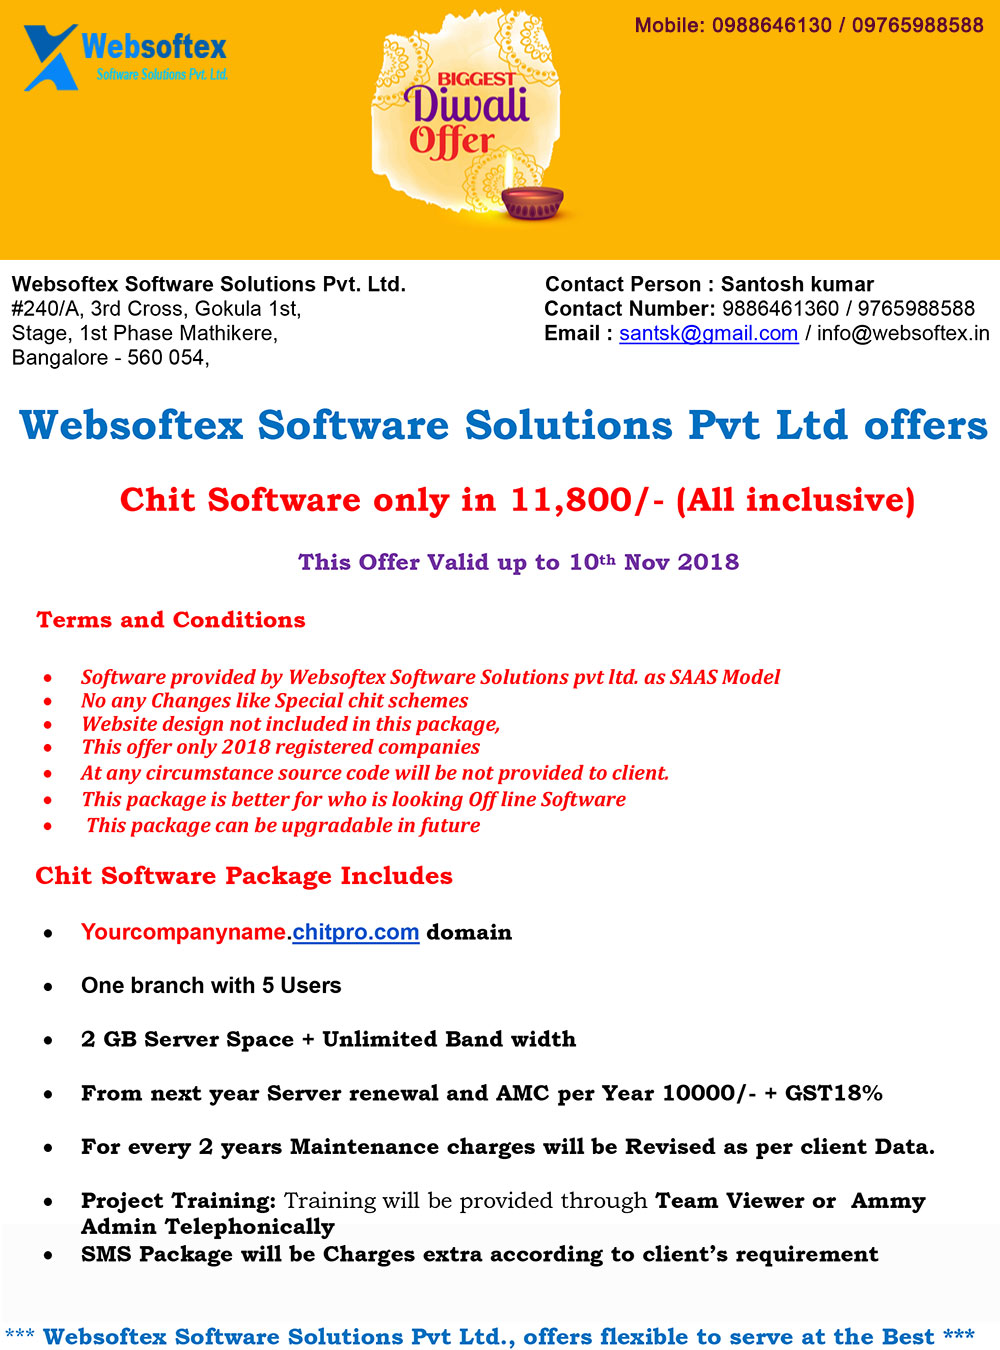 Chit Fund Software starting at 11800ServicesBusiness OffersWest DelhiUttam Nagar